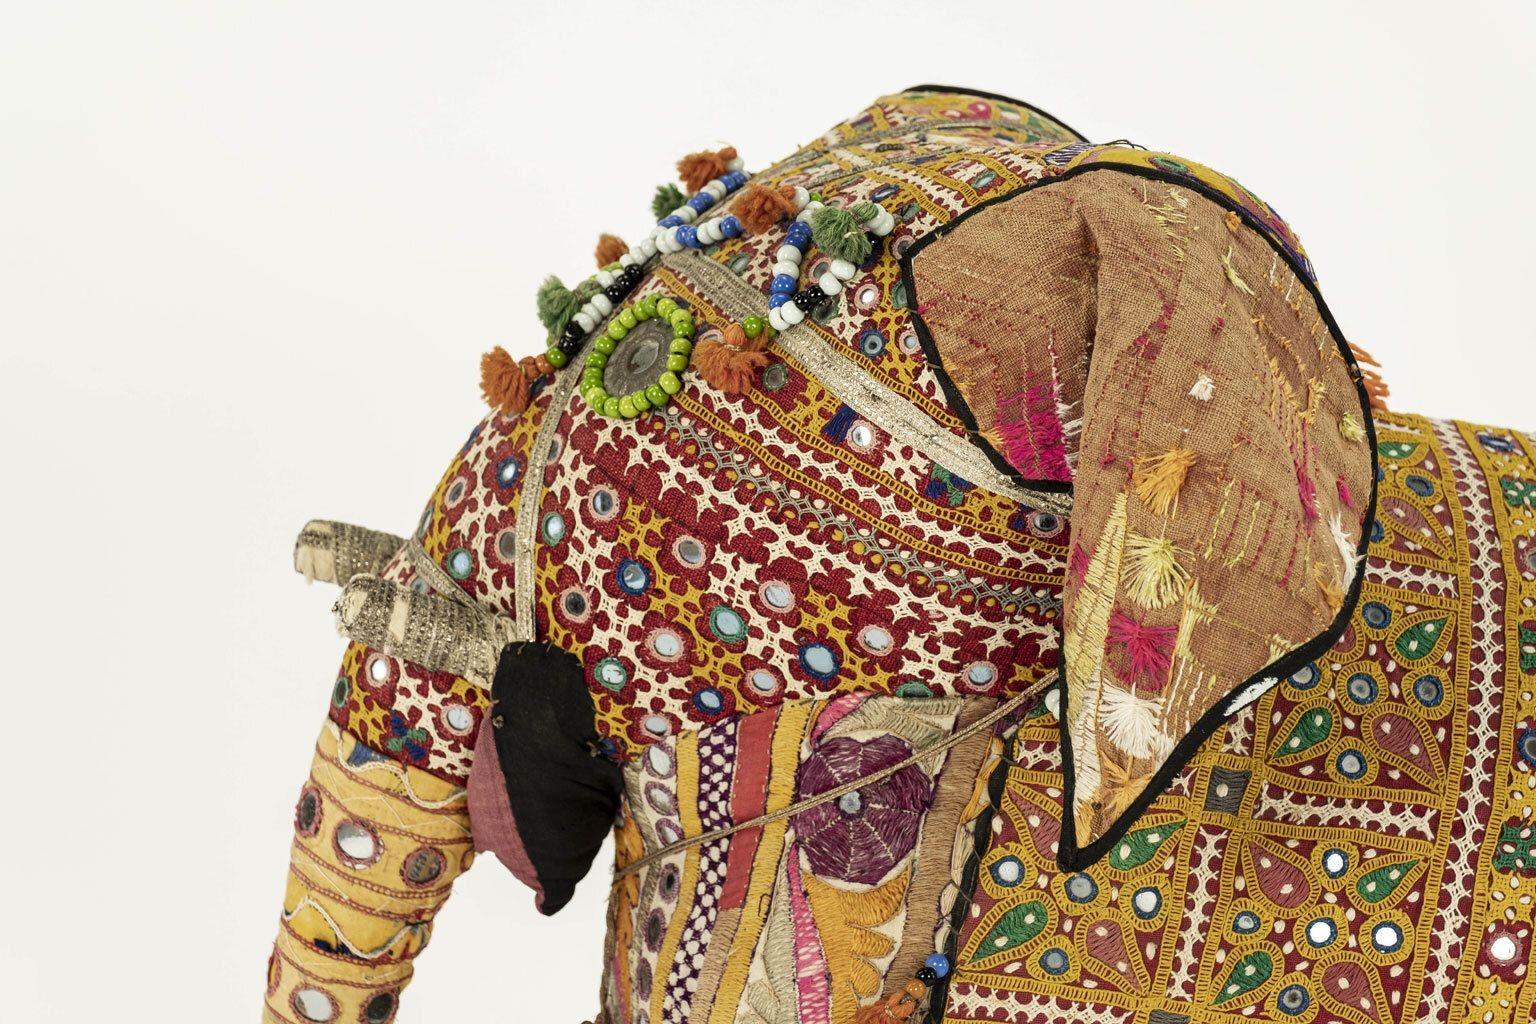 Massiver, mit indischen Textilien bezogener Baumwoll-Elefant, der in den 1950er Jahren von Harrods vertrieben wurde. Die Außenseite ist mit Stickereien, Quasten, kleinen Spiegeln, Perlen, Metallverzierungen und einer Messingglocke verziert. Der